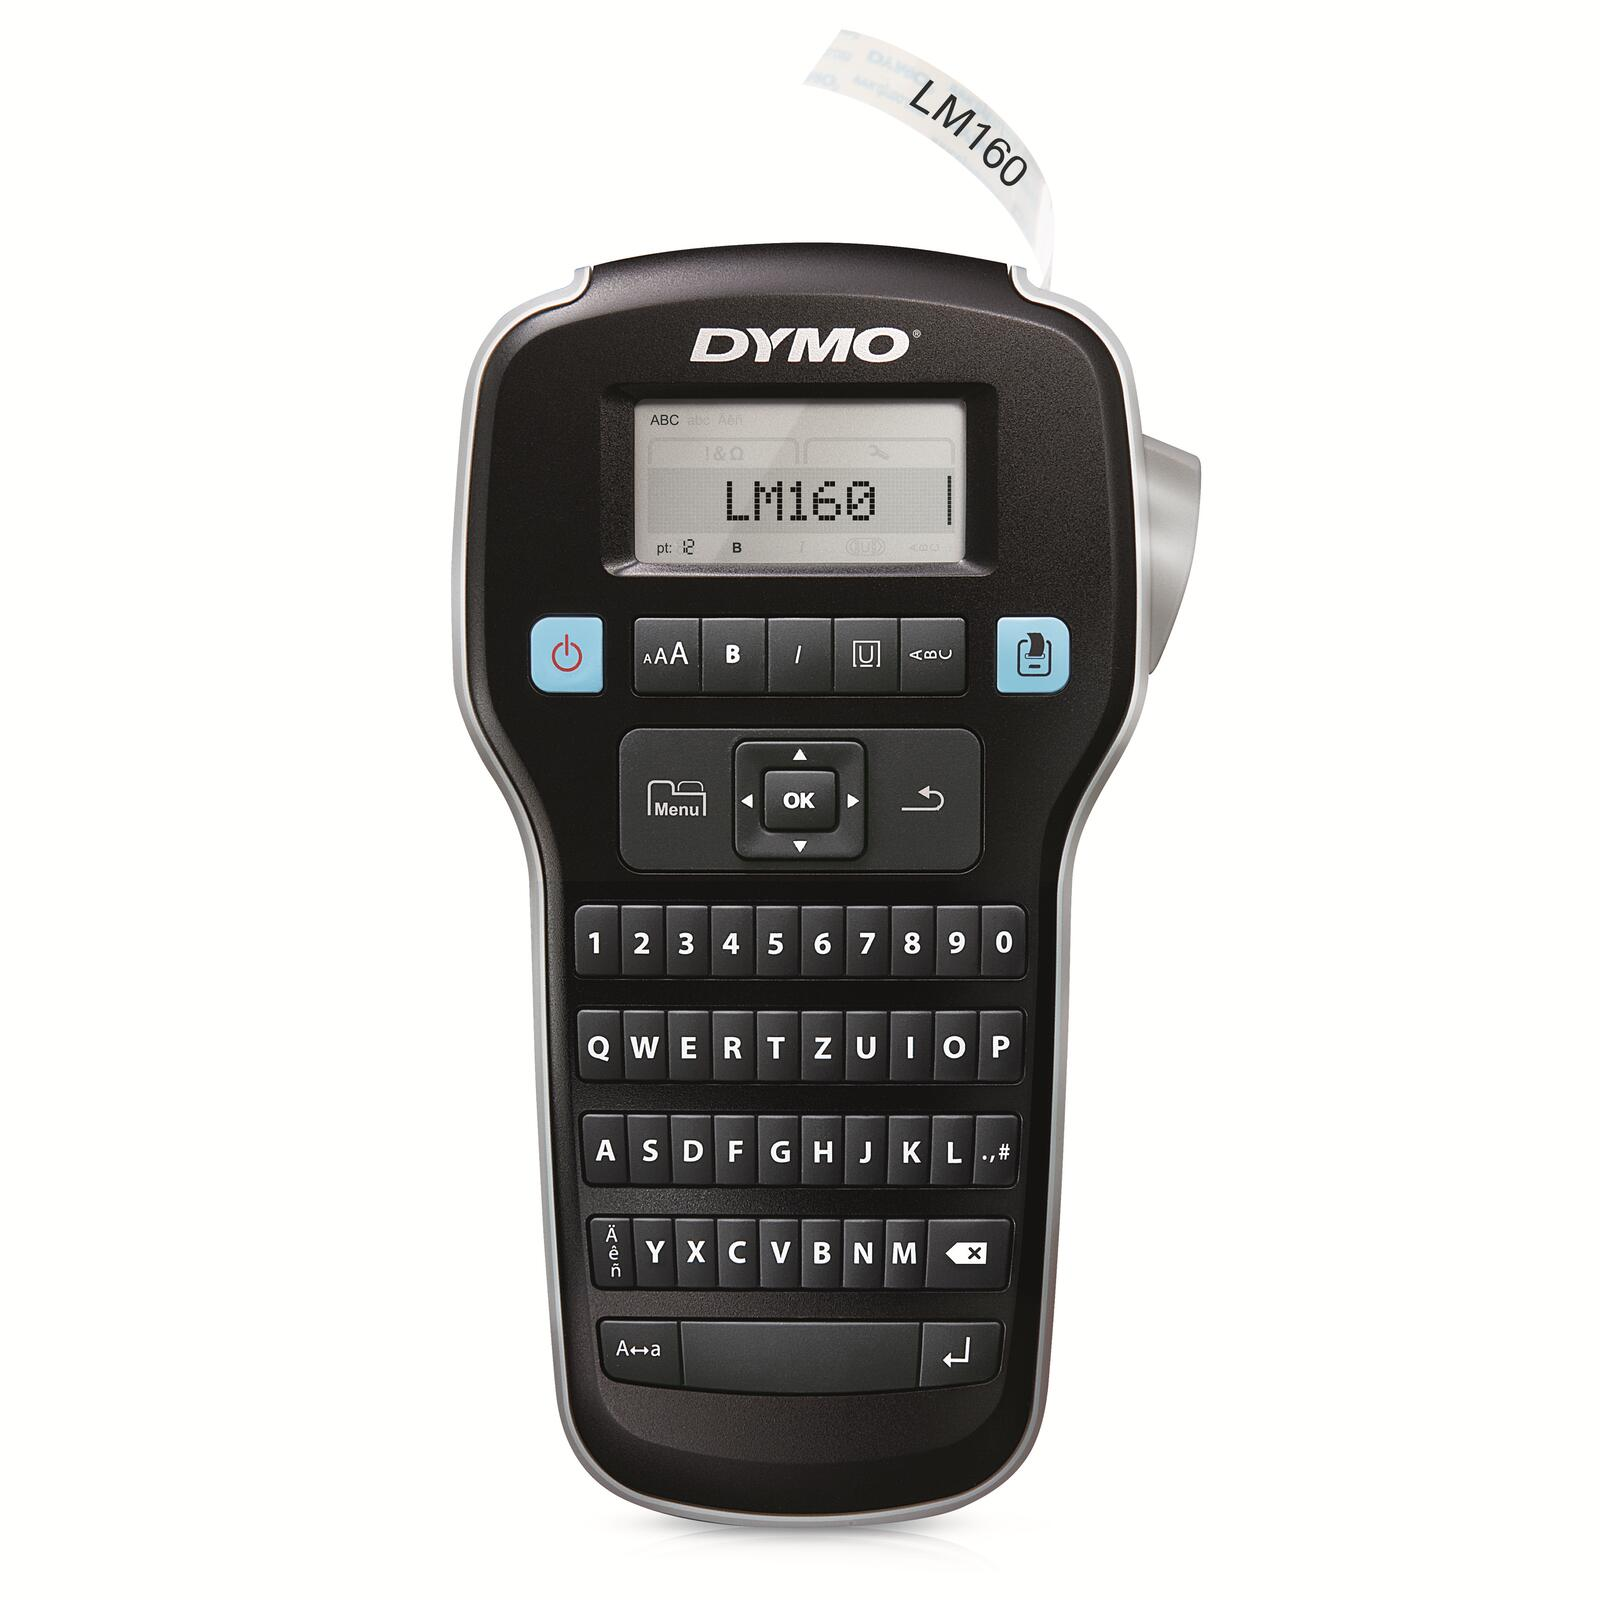 DYMO ® LabelManager™ 160 / Dymo darkslategray Beschriftungsgerät QWERTZ-Tastatur 